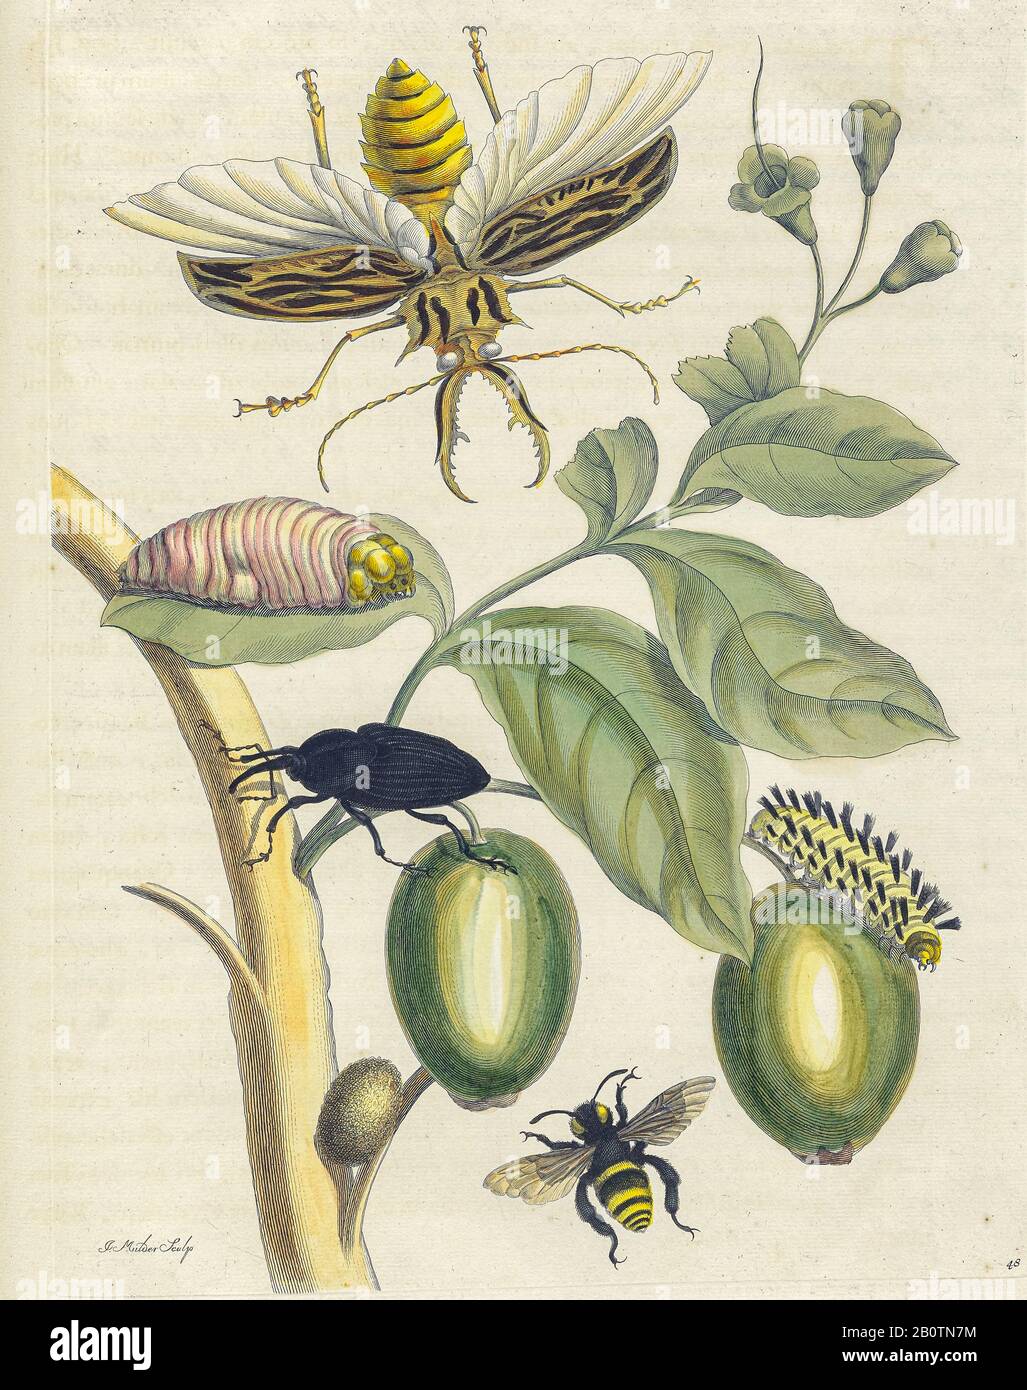 Käferpflanze und Schmetterling aus Metamorphosis insectorum Surinamensium (Surinam-Insekten) ein handfarbenes Buch aus dem 18. Jahrhundert von Maria Sibylla Merian, das 1719 in Amsterdam veröffentlicht wurde Stockfoto